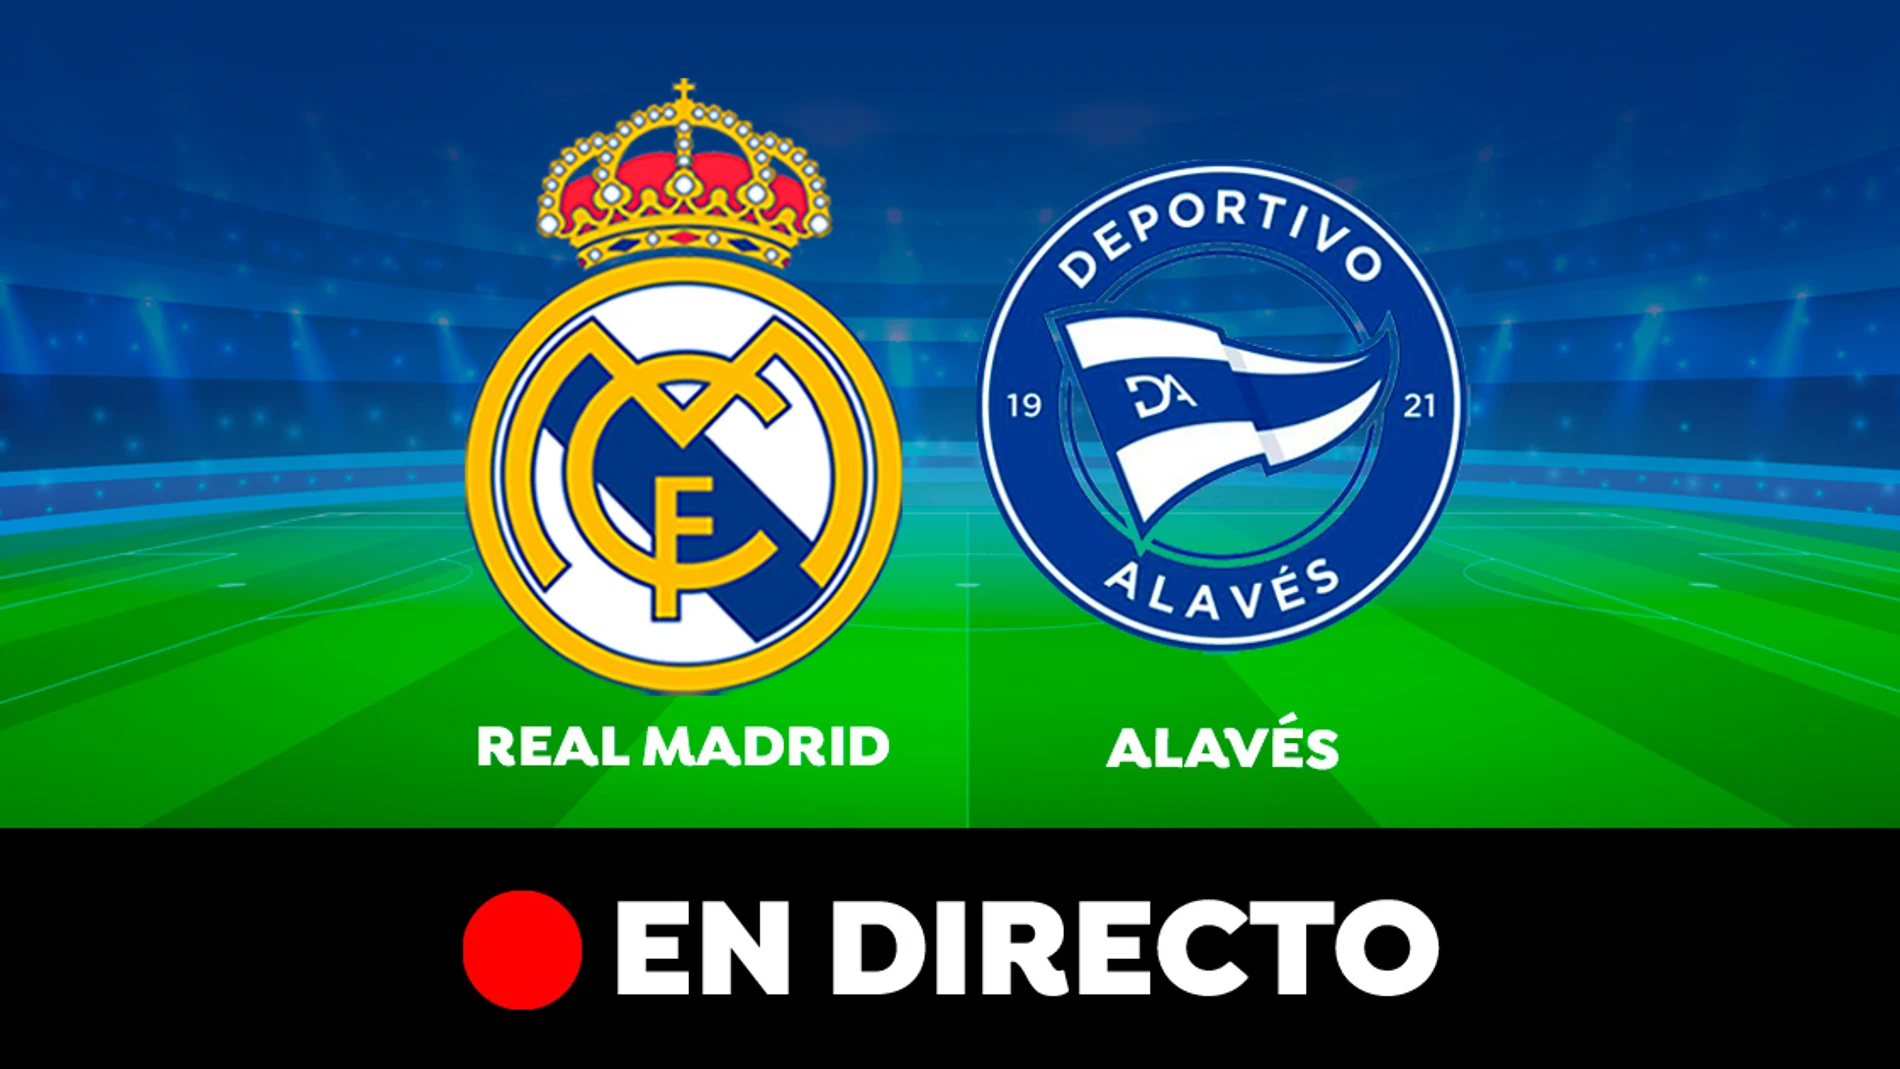 Real Madrid - Resultado, resumen y goles, directo (3-0)